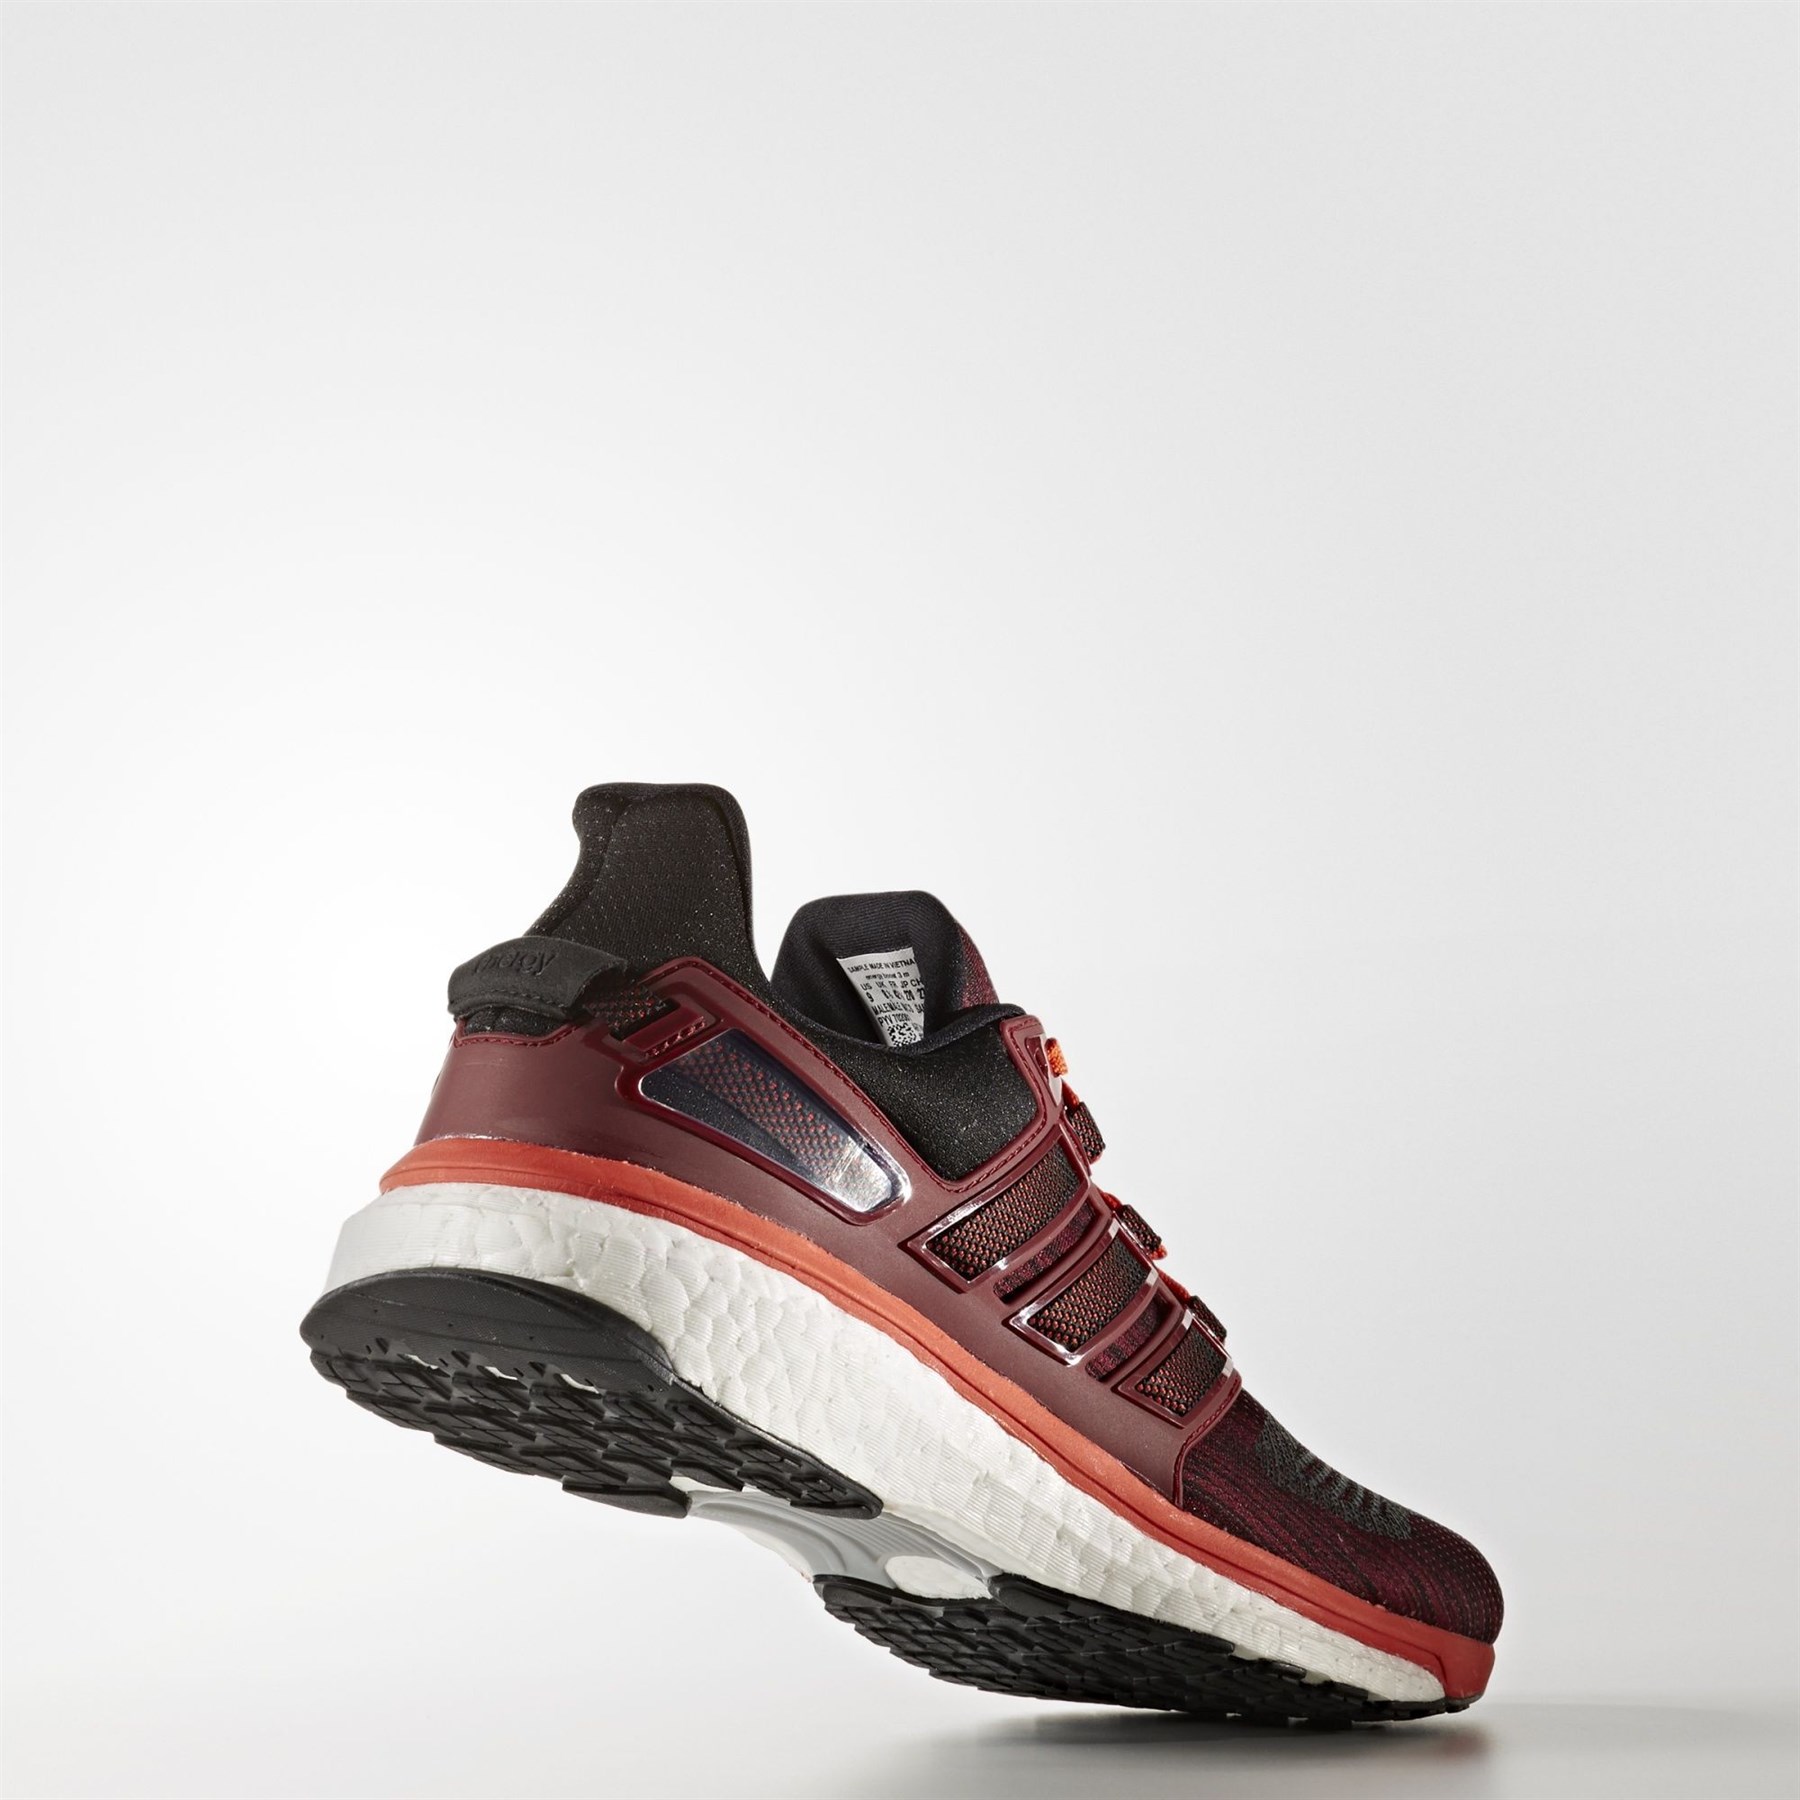 Adidas Erkek Koşu Yürüyüş Ayakkabısı BB5788 energy boost 3 m